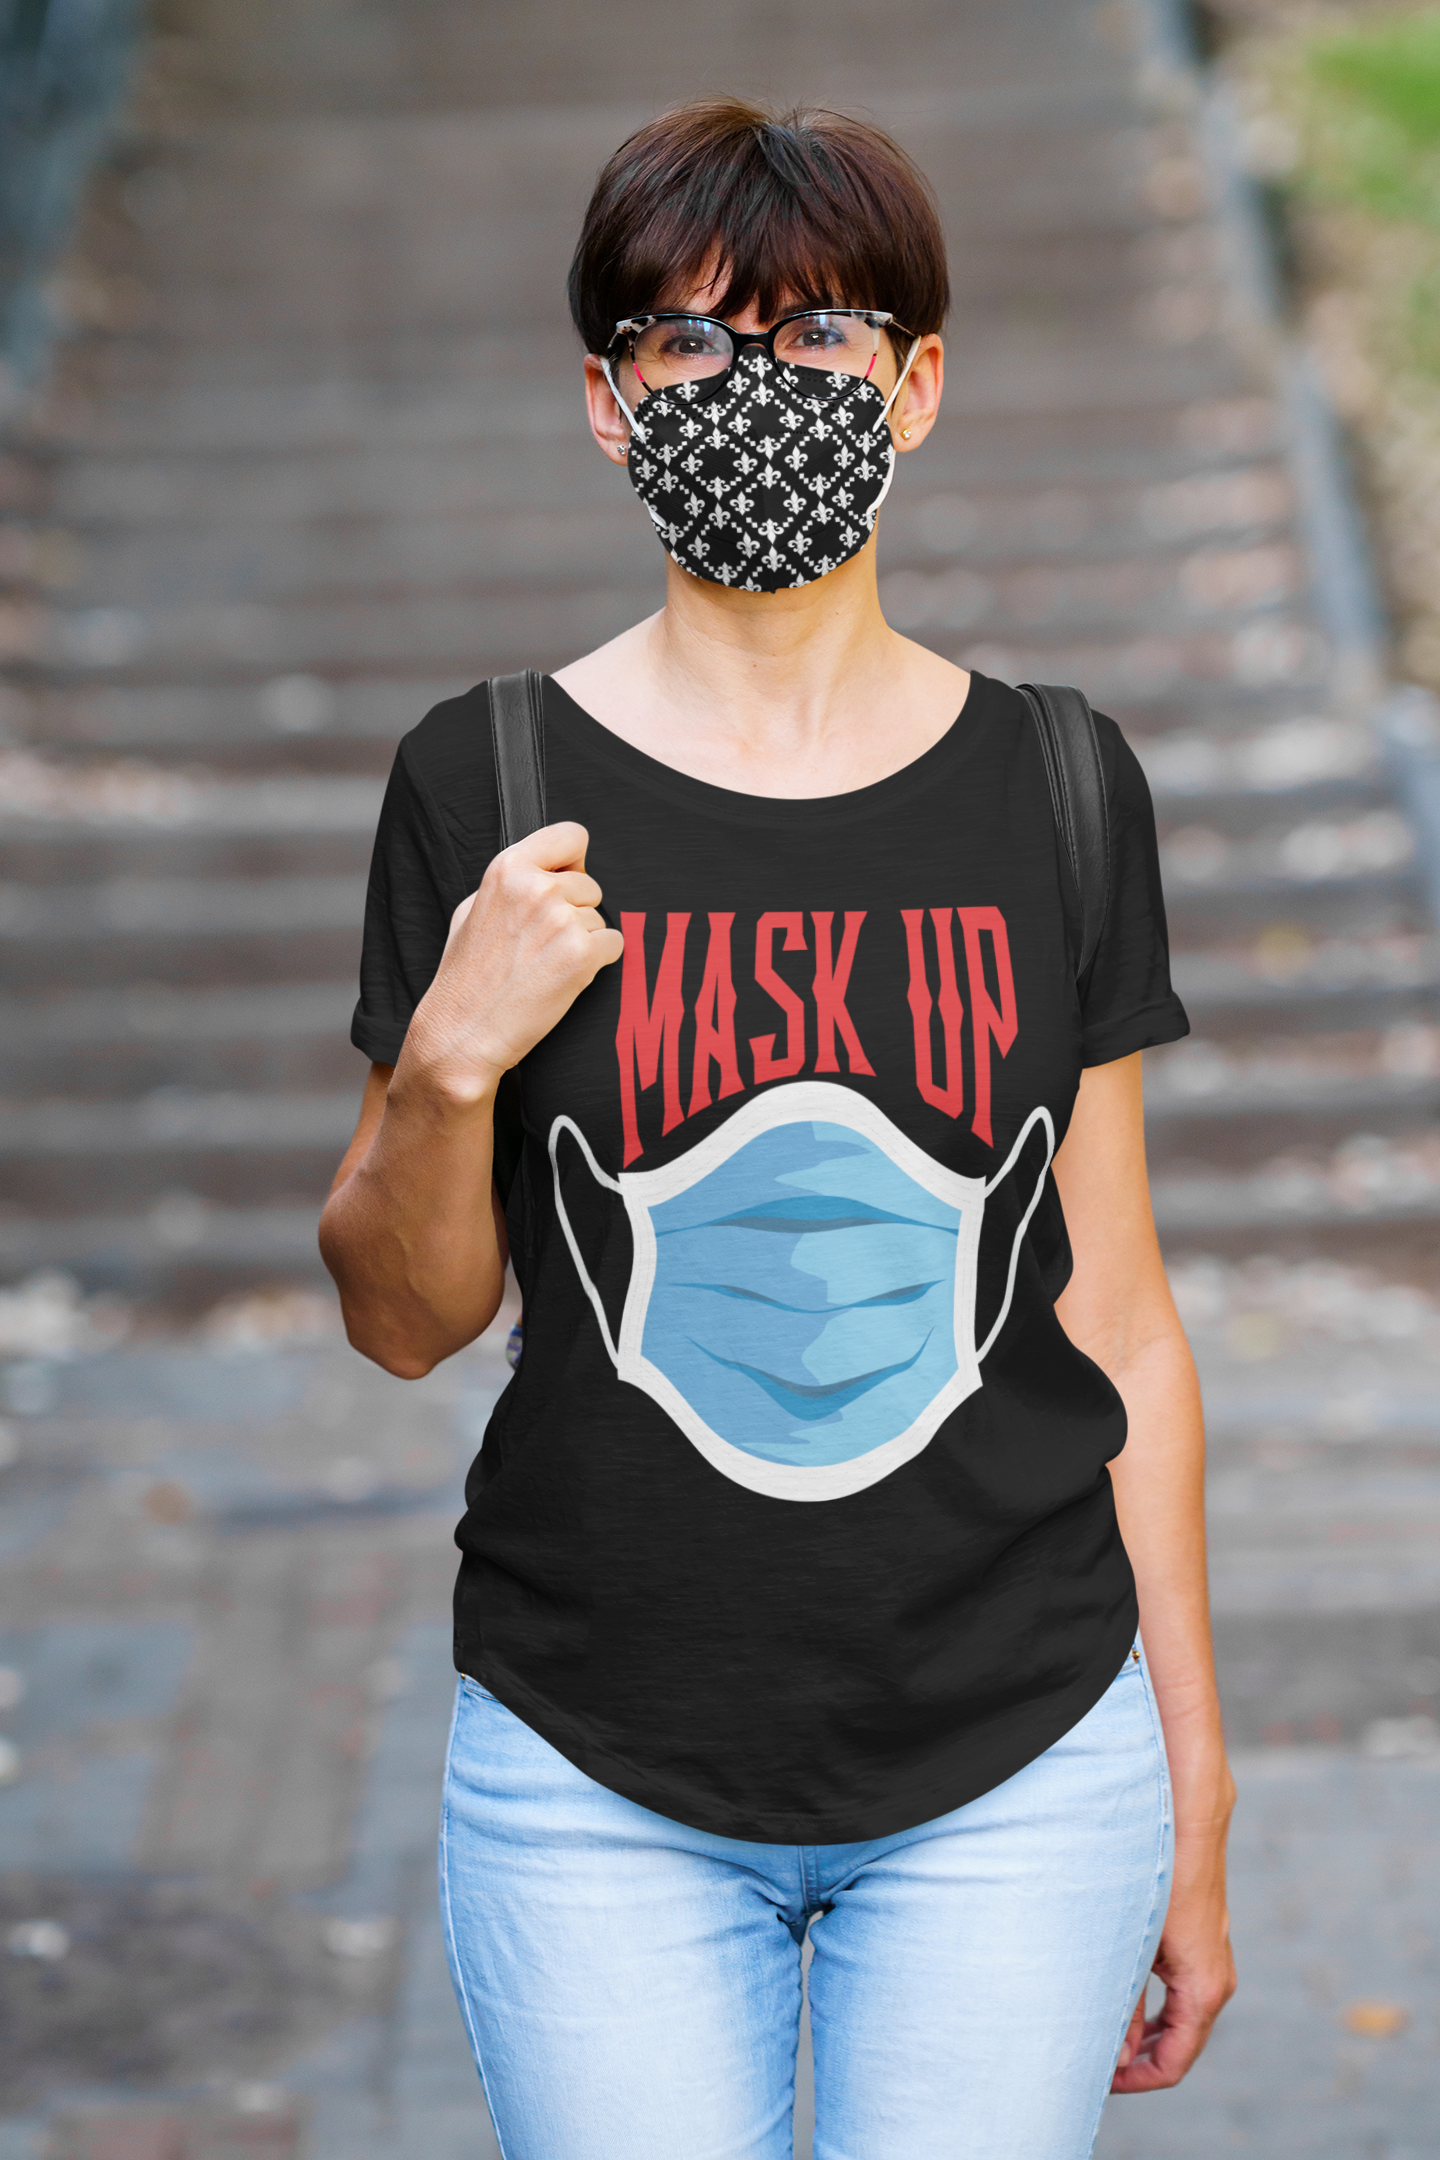 Mask Up Short-Sleeve Unisex T-Shirt || MRNGN CLOTHING